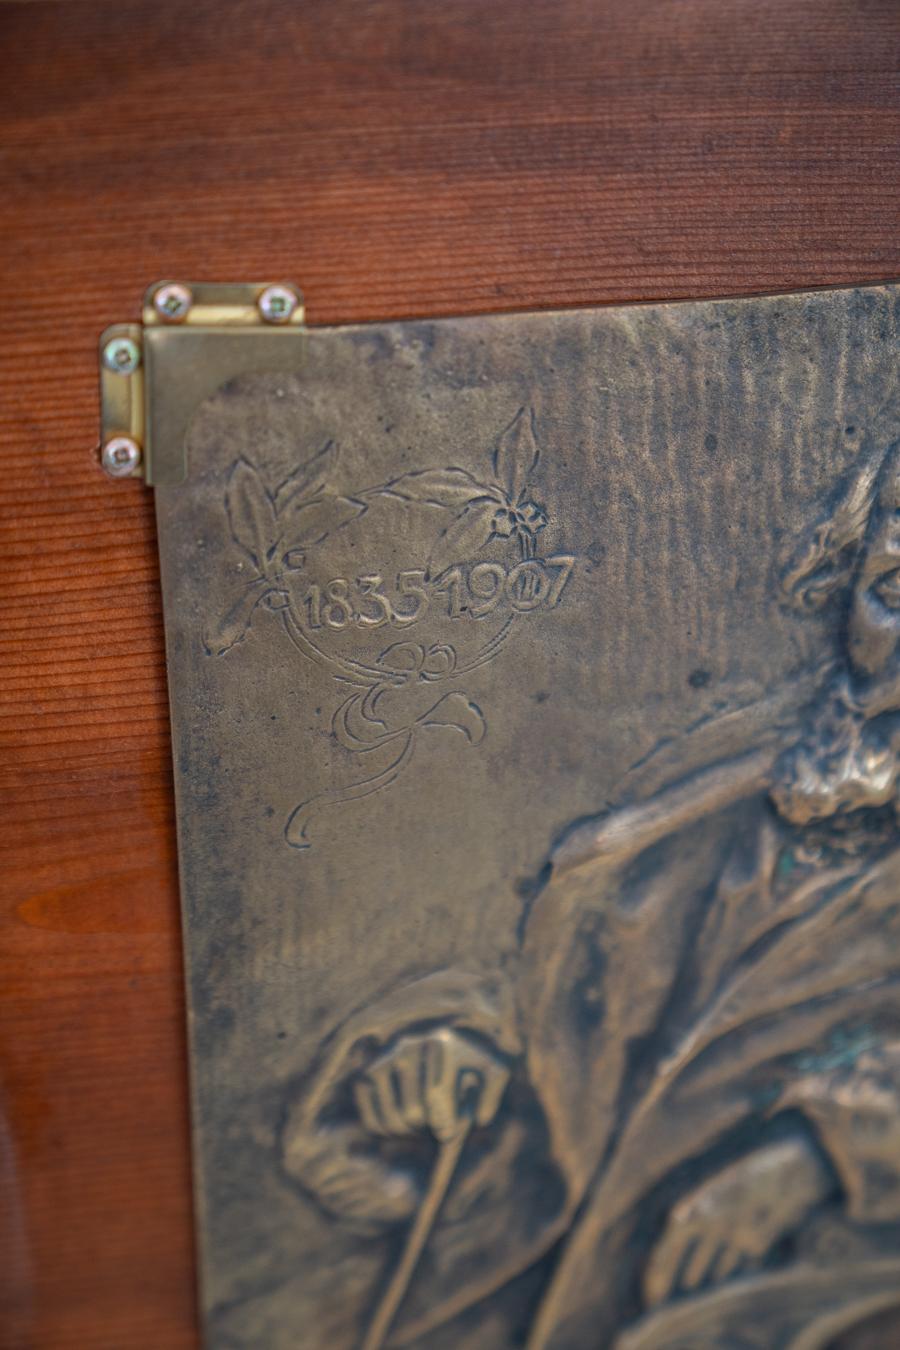 Bronze coulé en bas-relief, représentant Giosuè Carducci 1835
Plus d'informations sur l'article
Œuvre d'art, y compris le support.
MESURES H34,5 x L34,5 x P4 / Kg5
Style
Vintage
Période de conception
Avant 1890
Période de production
Avant 1890
Année